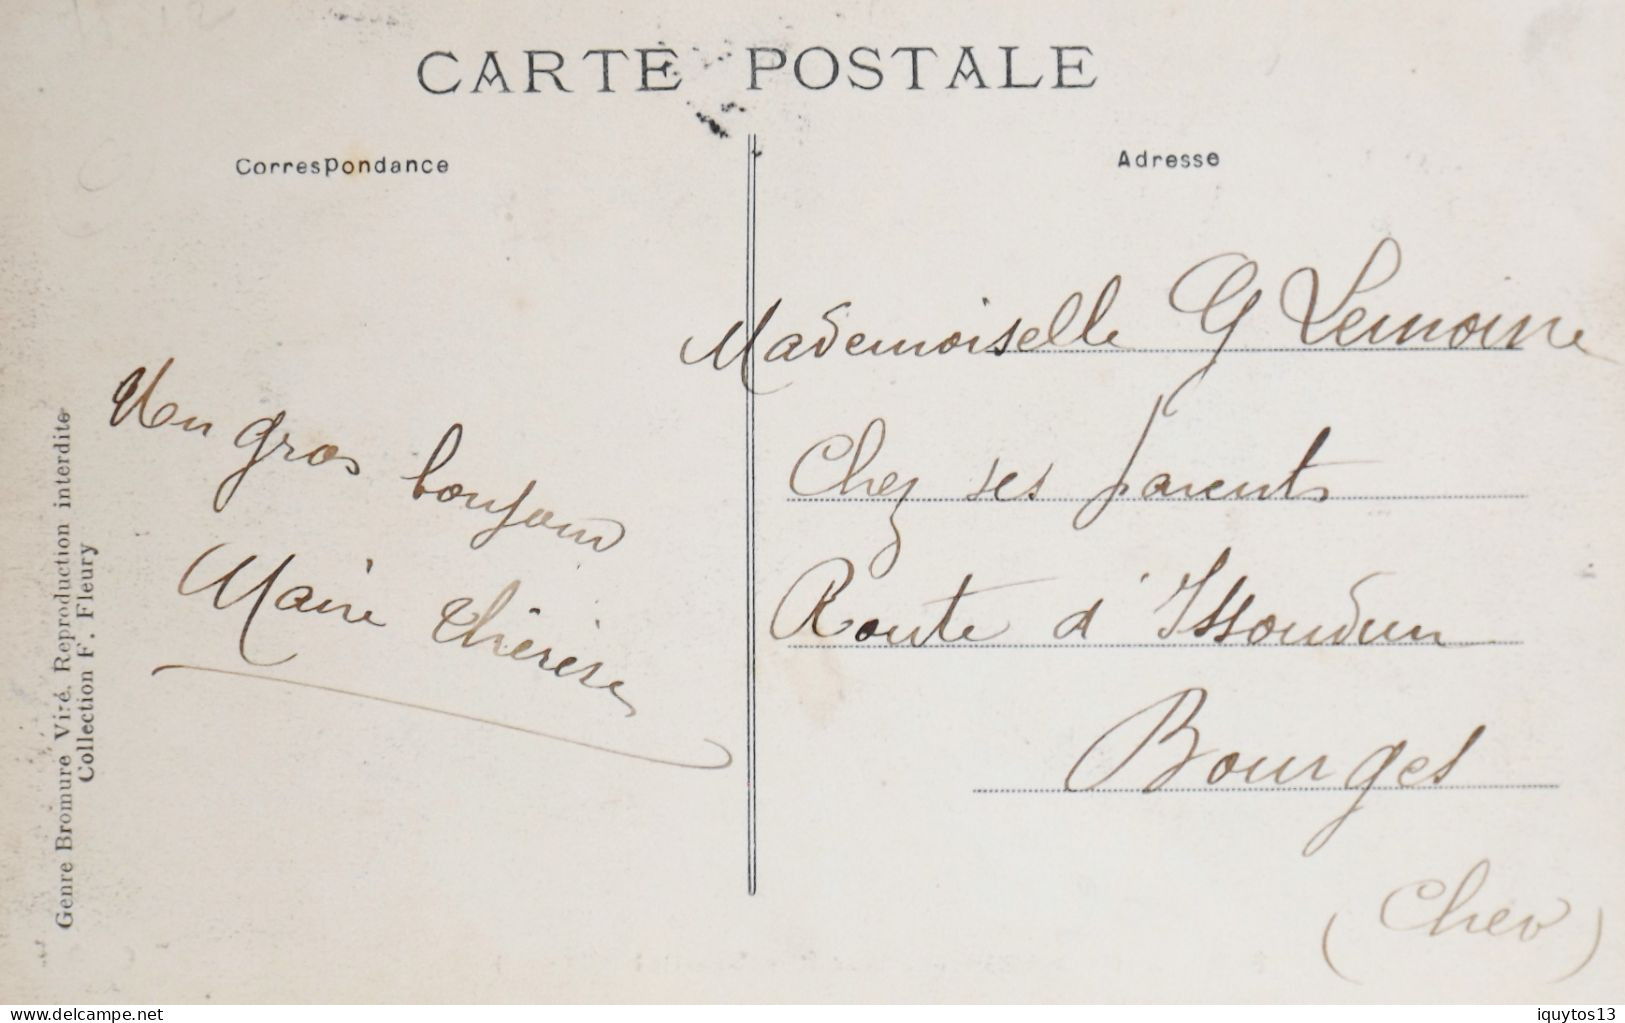 CPA. [75] > TOUT PARIS > N° 1940 - Place Rambouillet - (XIIe Arrt.) - 1908 - TBE - District 12